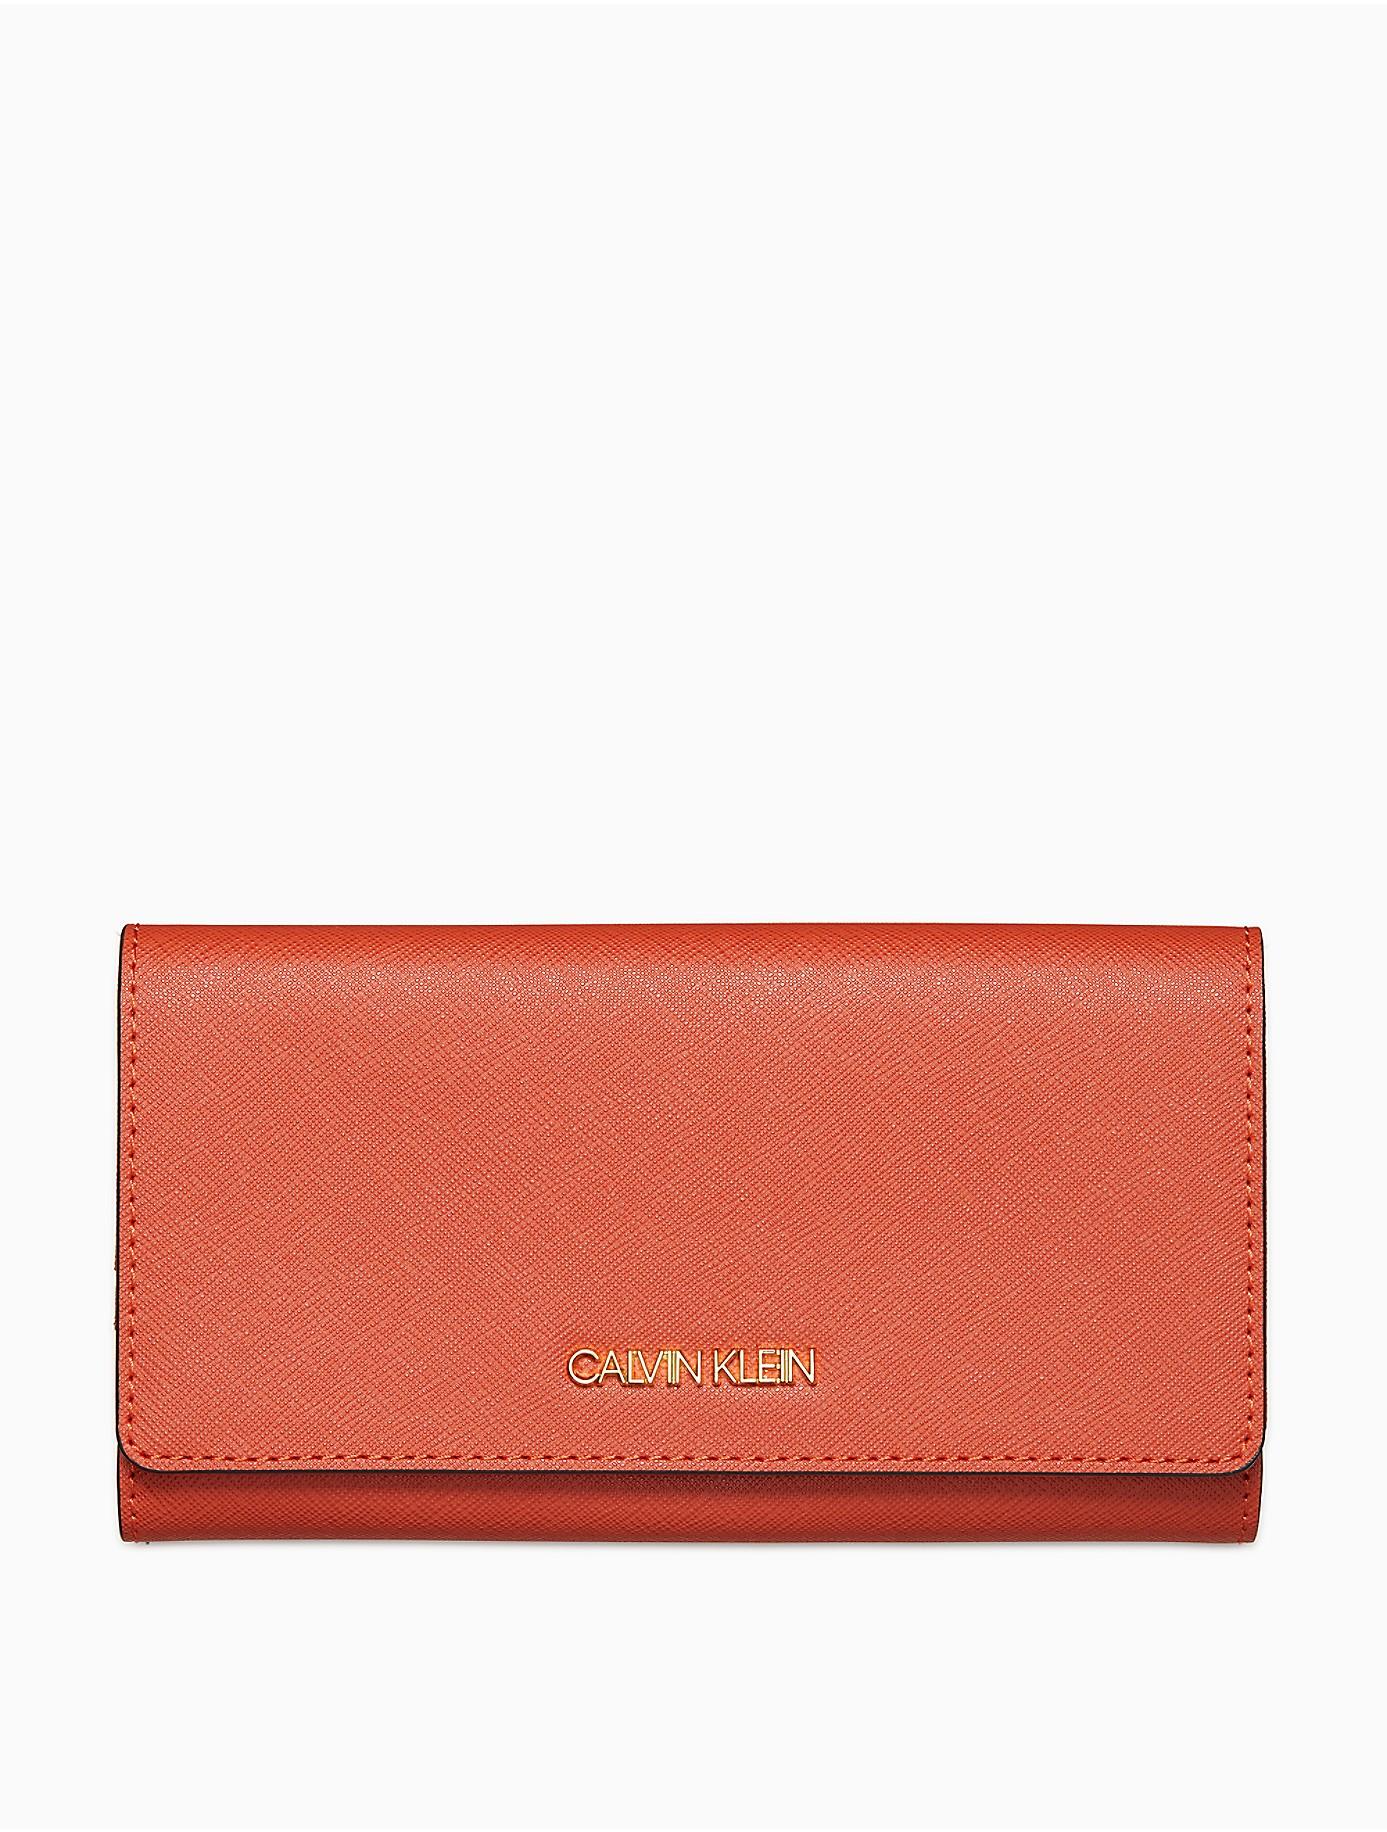 Calvin Klein Saffiano Leather Trifold Wallet in Burnt Orange (Orange ...